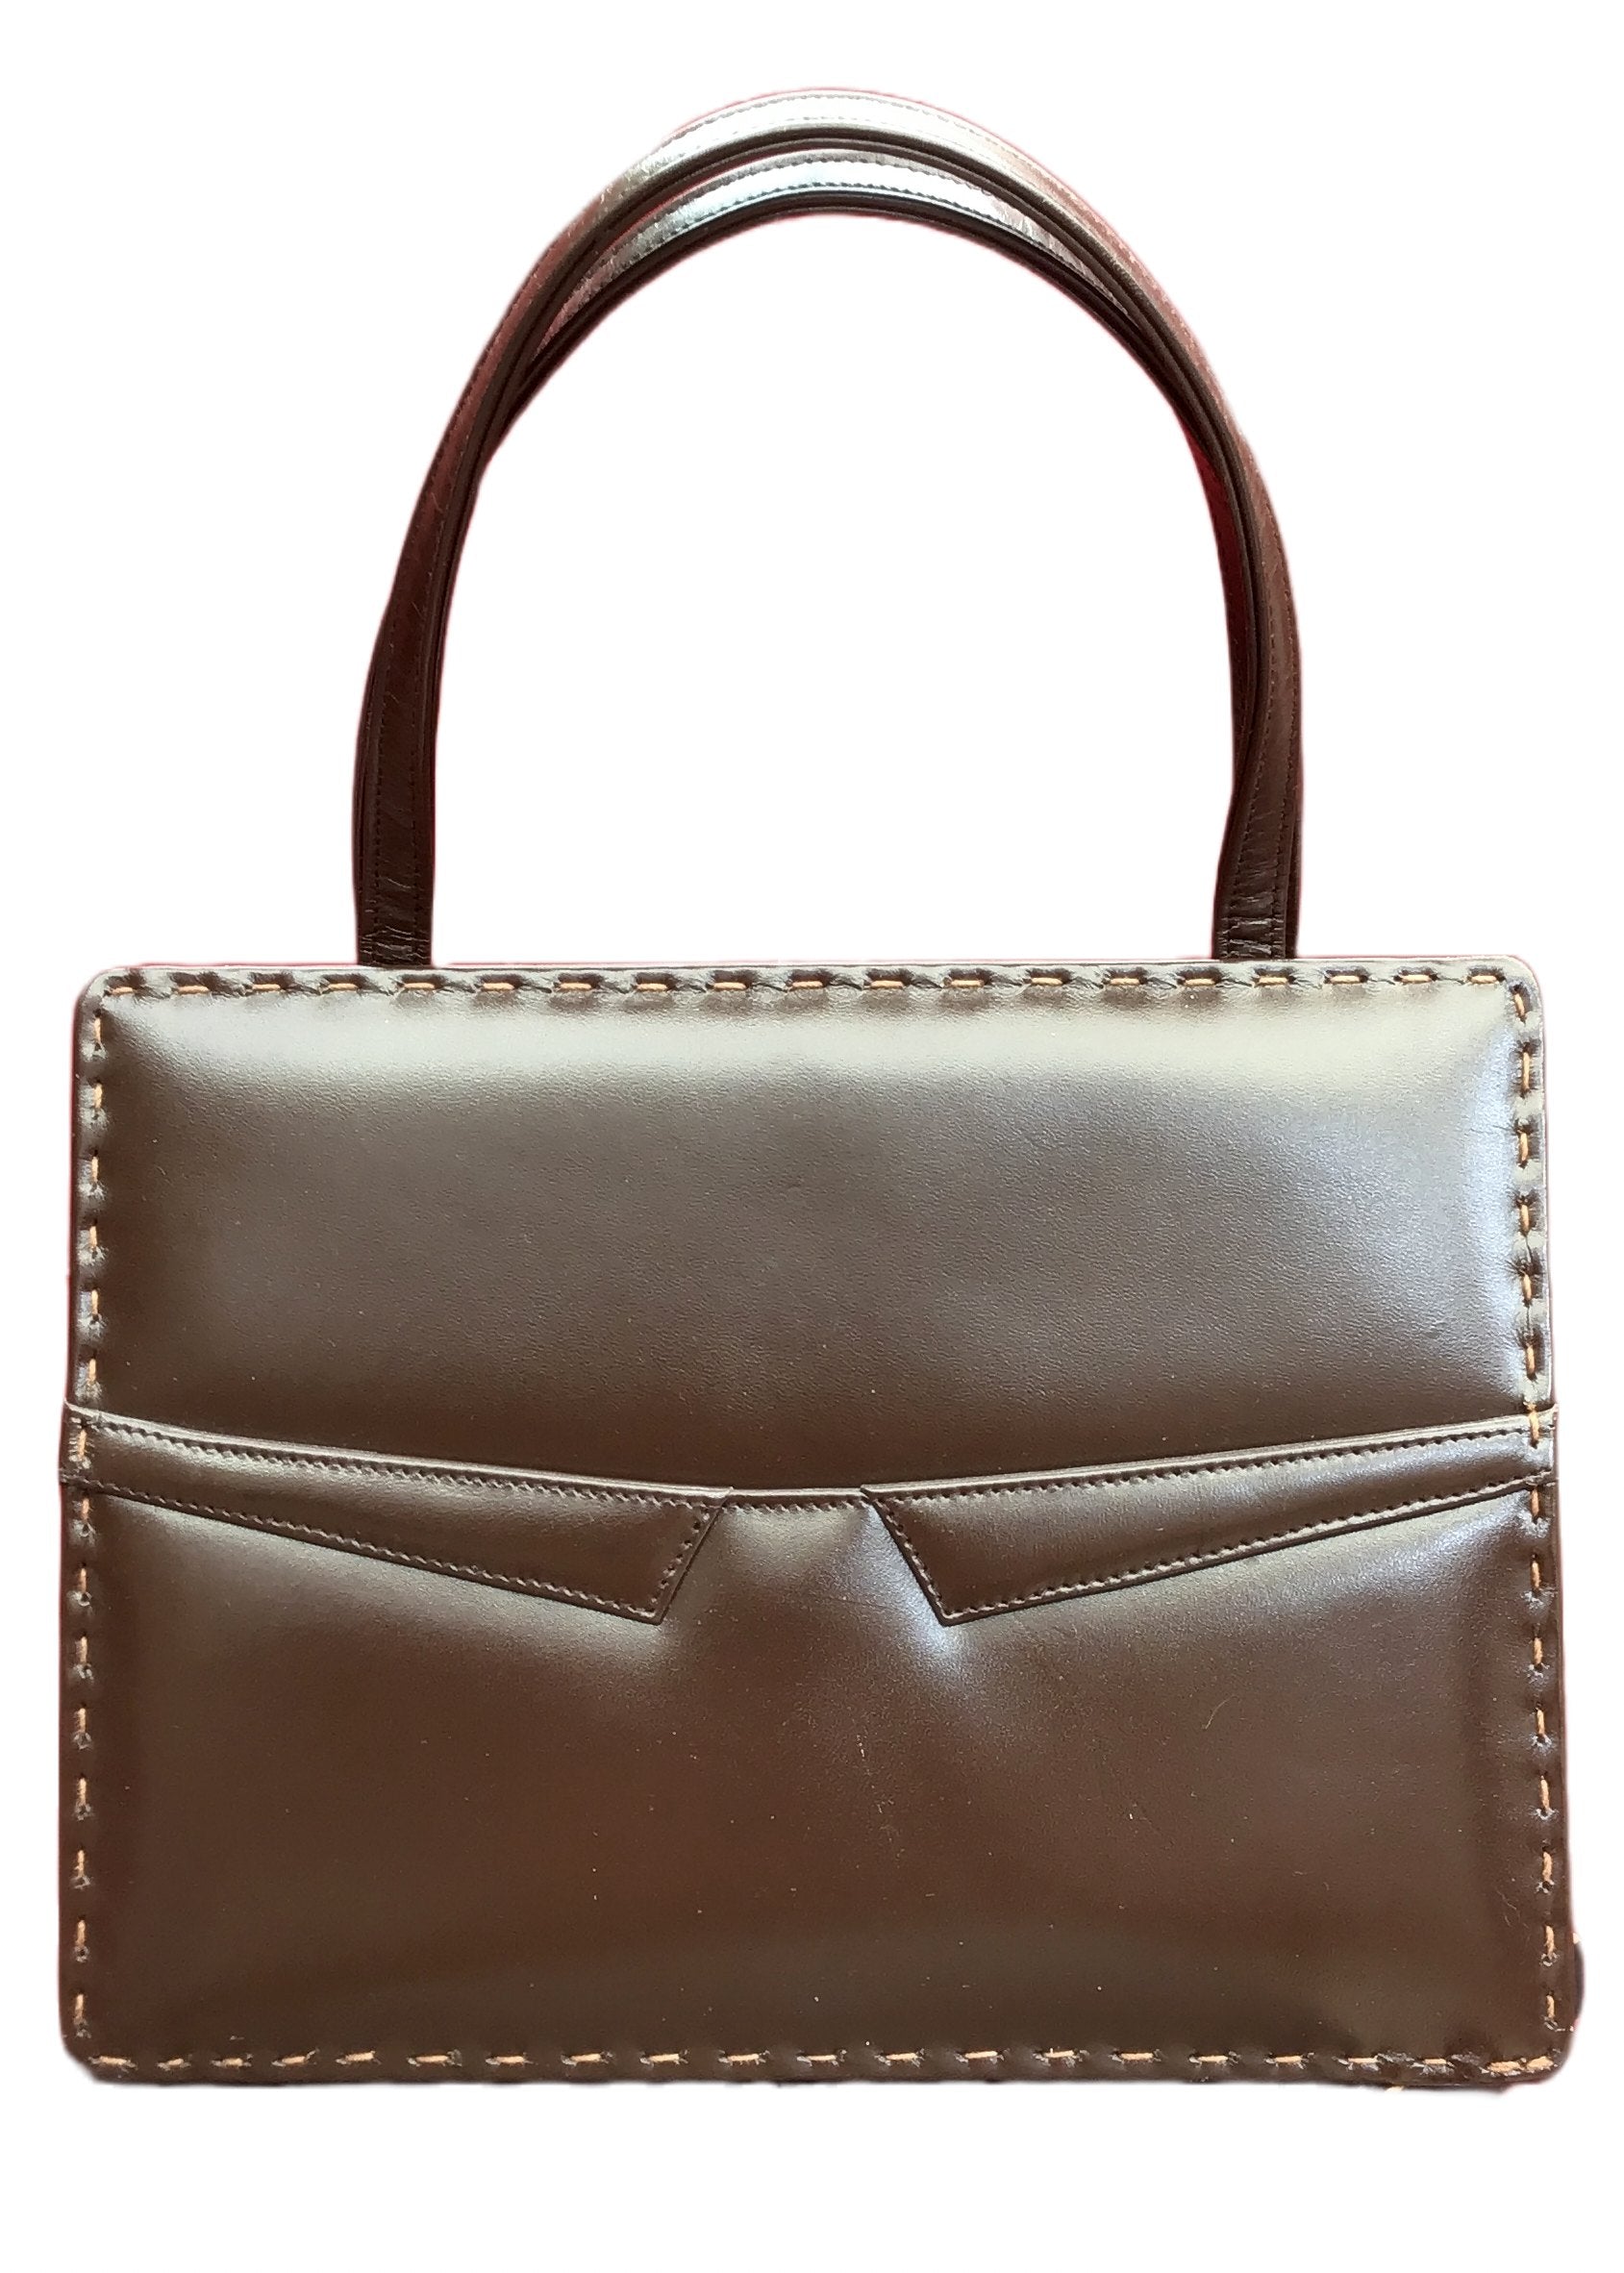 brown leather top handle vintage bag by widegate